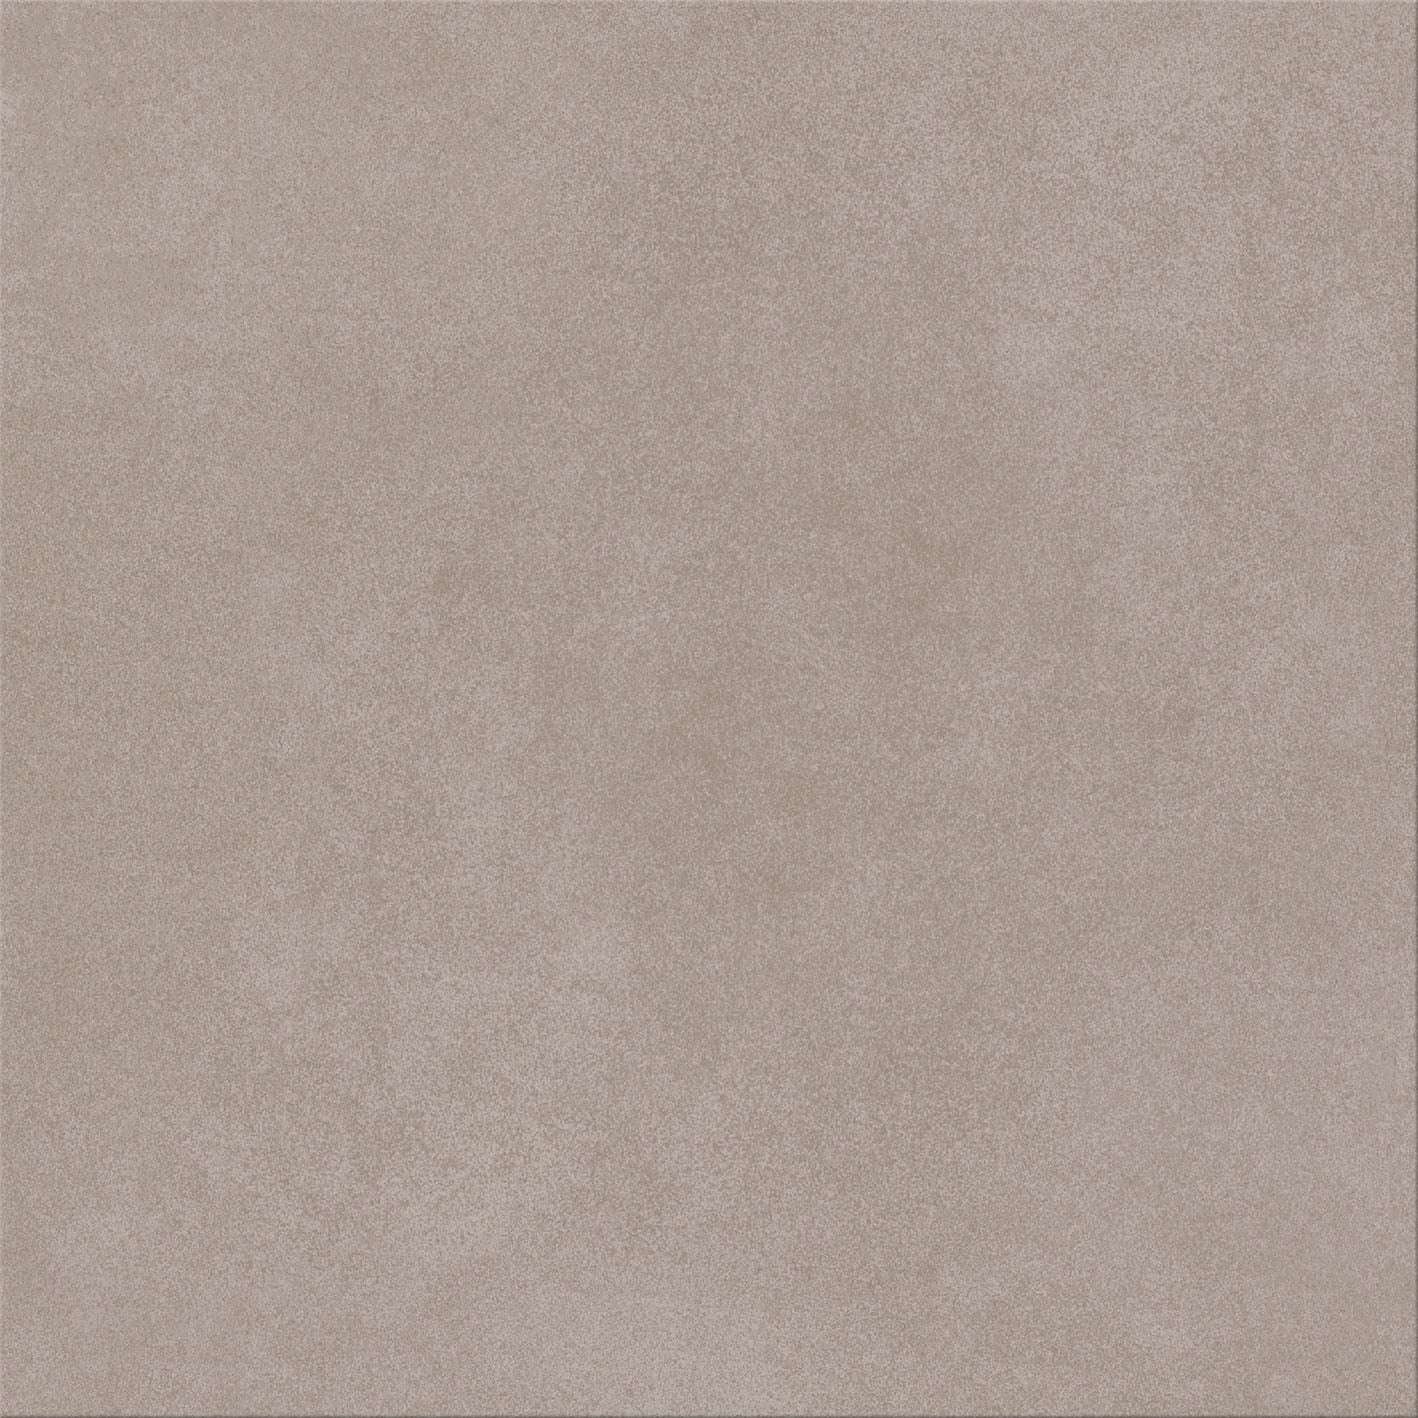 Керамогранит Cinca Bel Air Taupe 8569, цвет коричневый, поверхность глазурованная, квадрат, 500x500